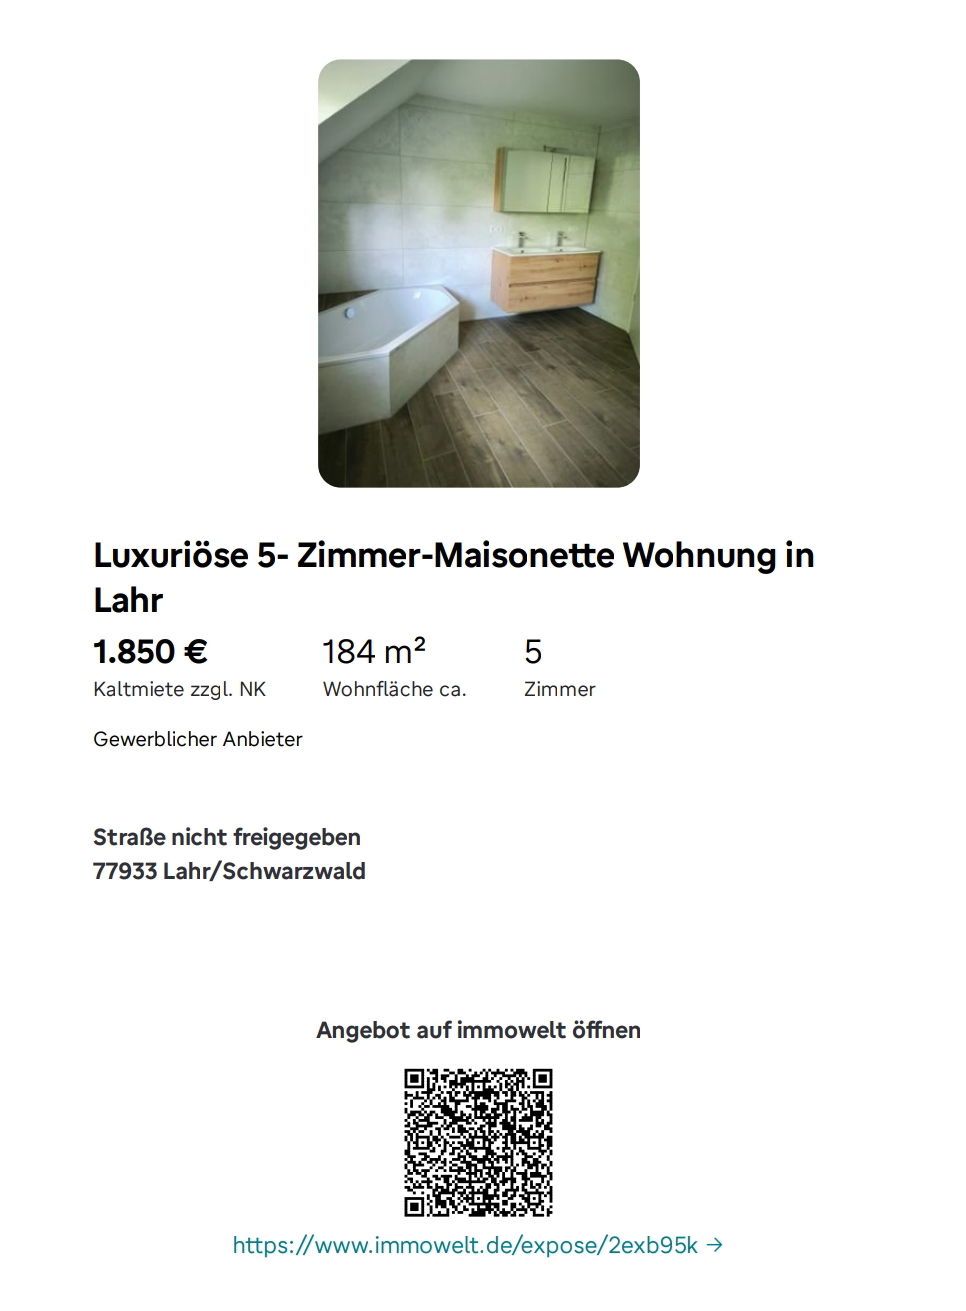 Vermietung: 5- Zimmer- Maisonette- Wohnung in Lahr